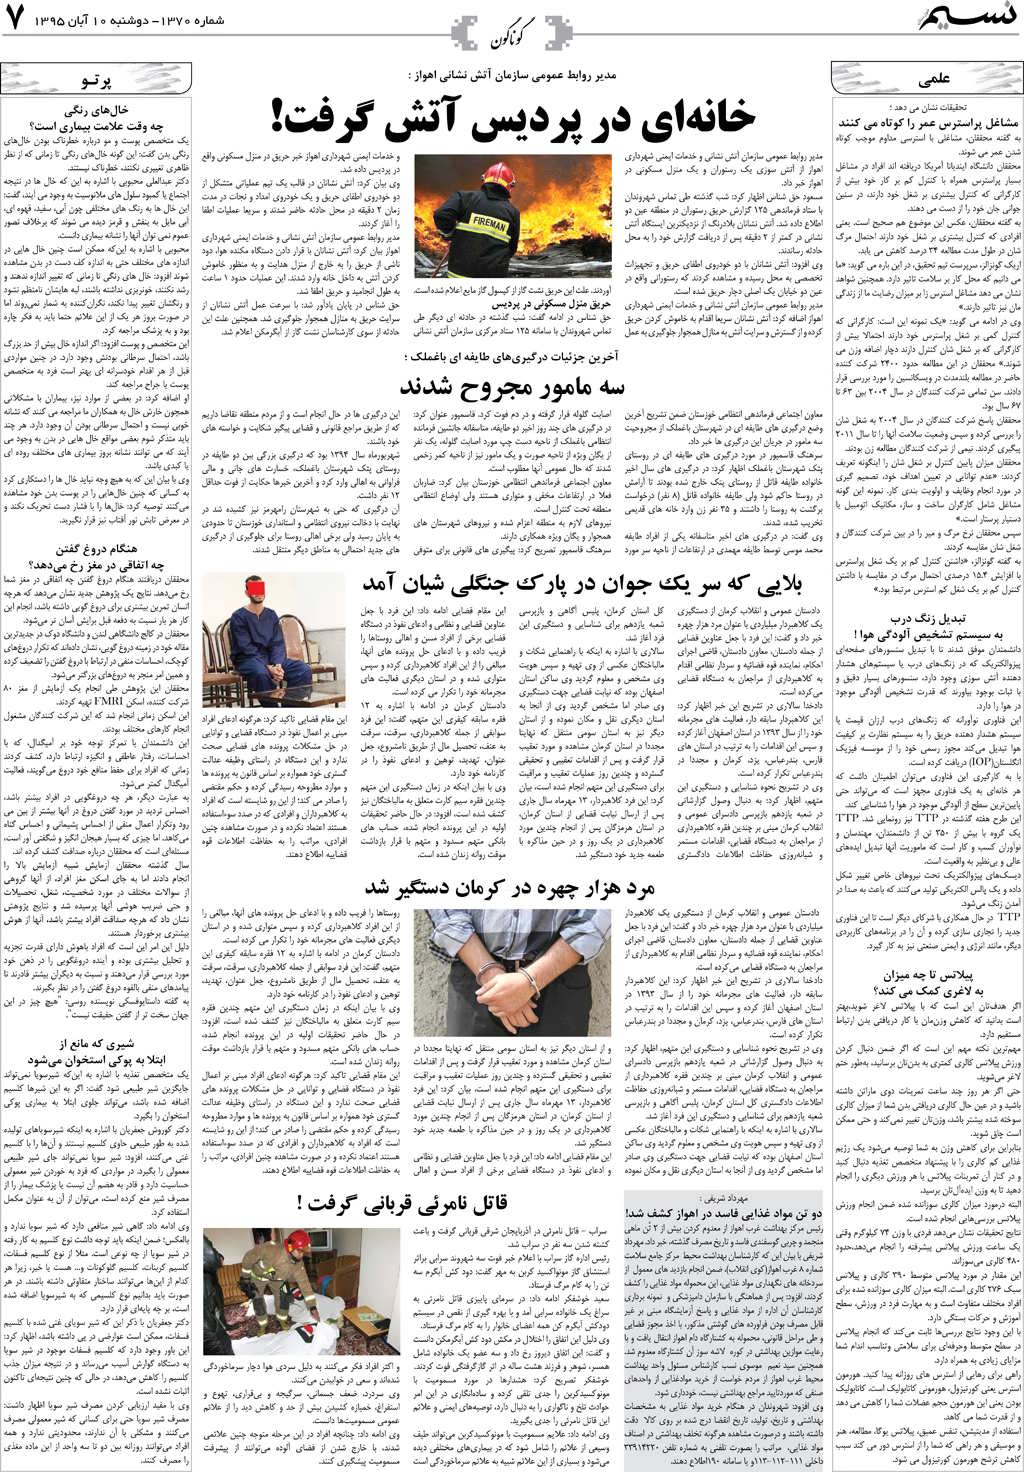 صفحه گوناگون روزنامه نسیم شماره 1370